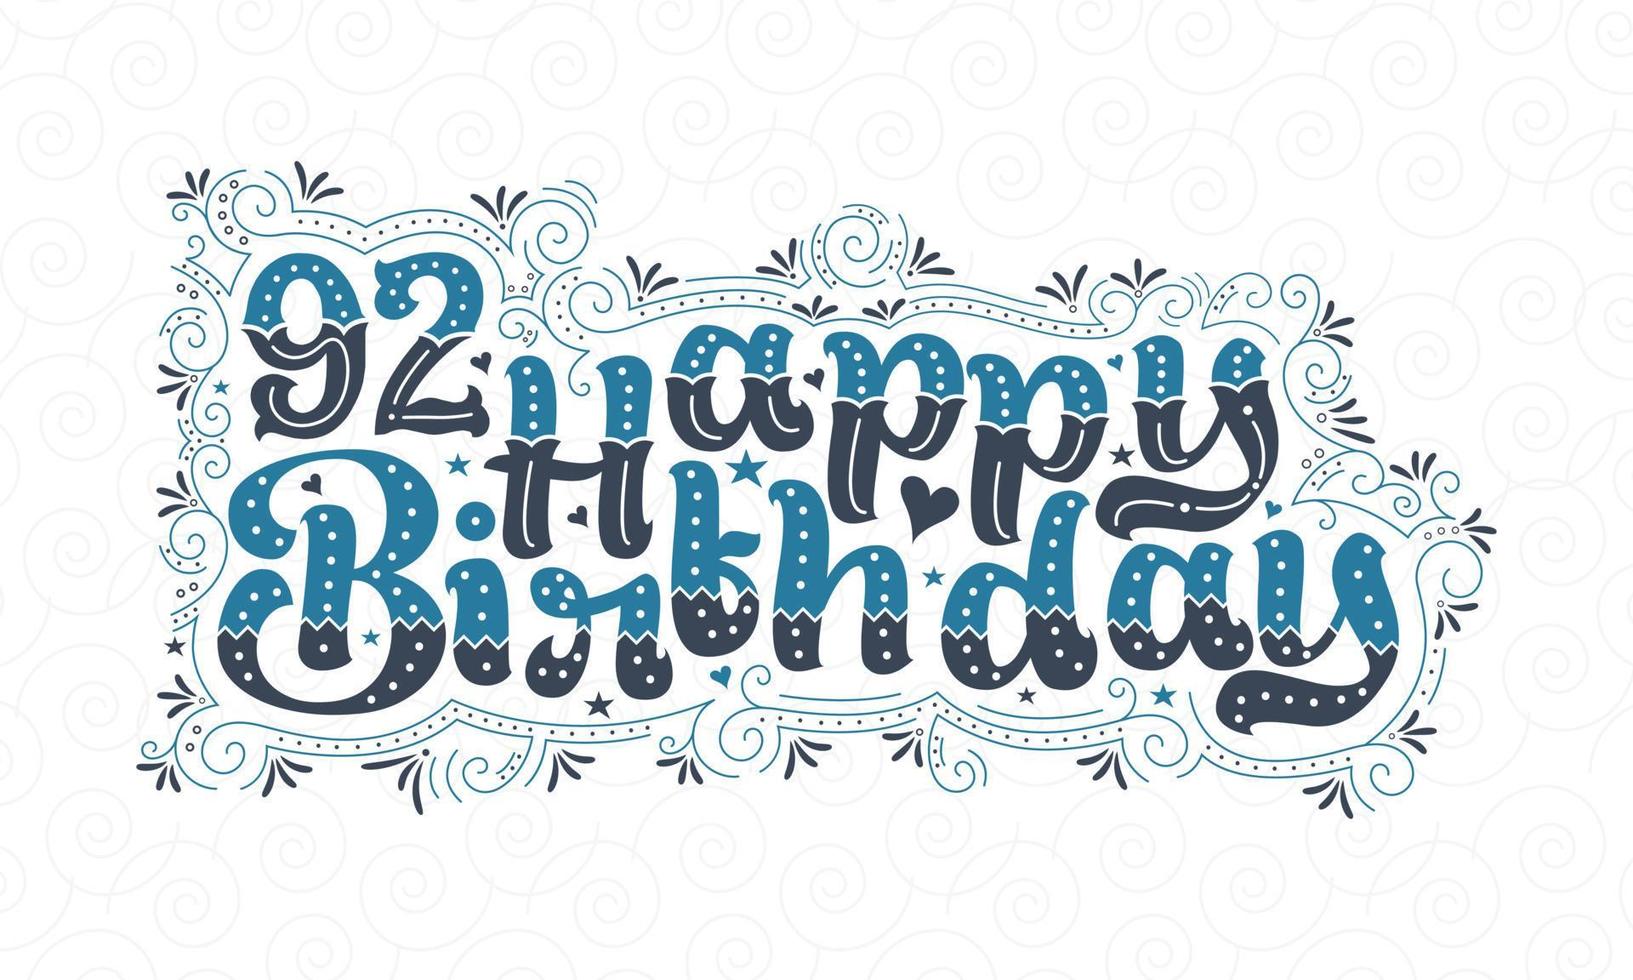 92. Happy Birthday Schriftzug, 92 Jahre Geburtstag schönes Typografie-Design mit blauen und schwarzen Punkten, Linien und Blättern. vektor